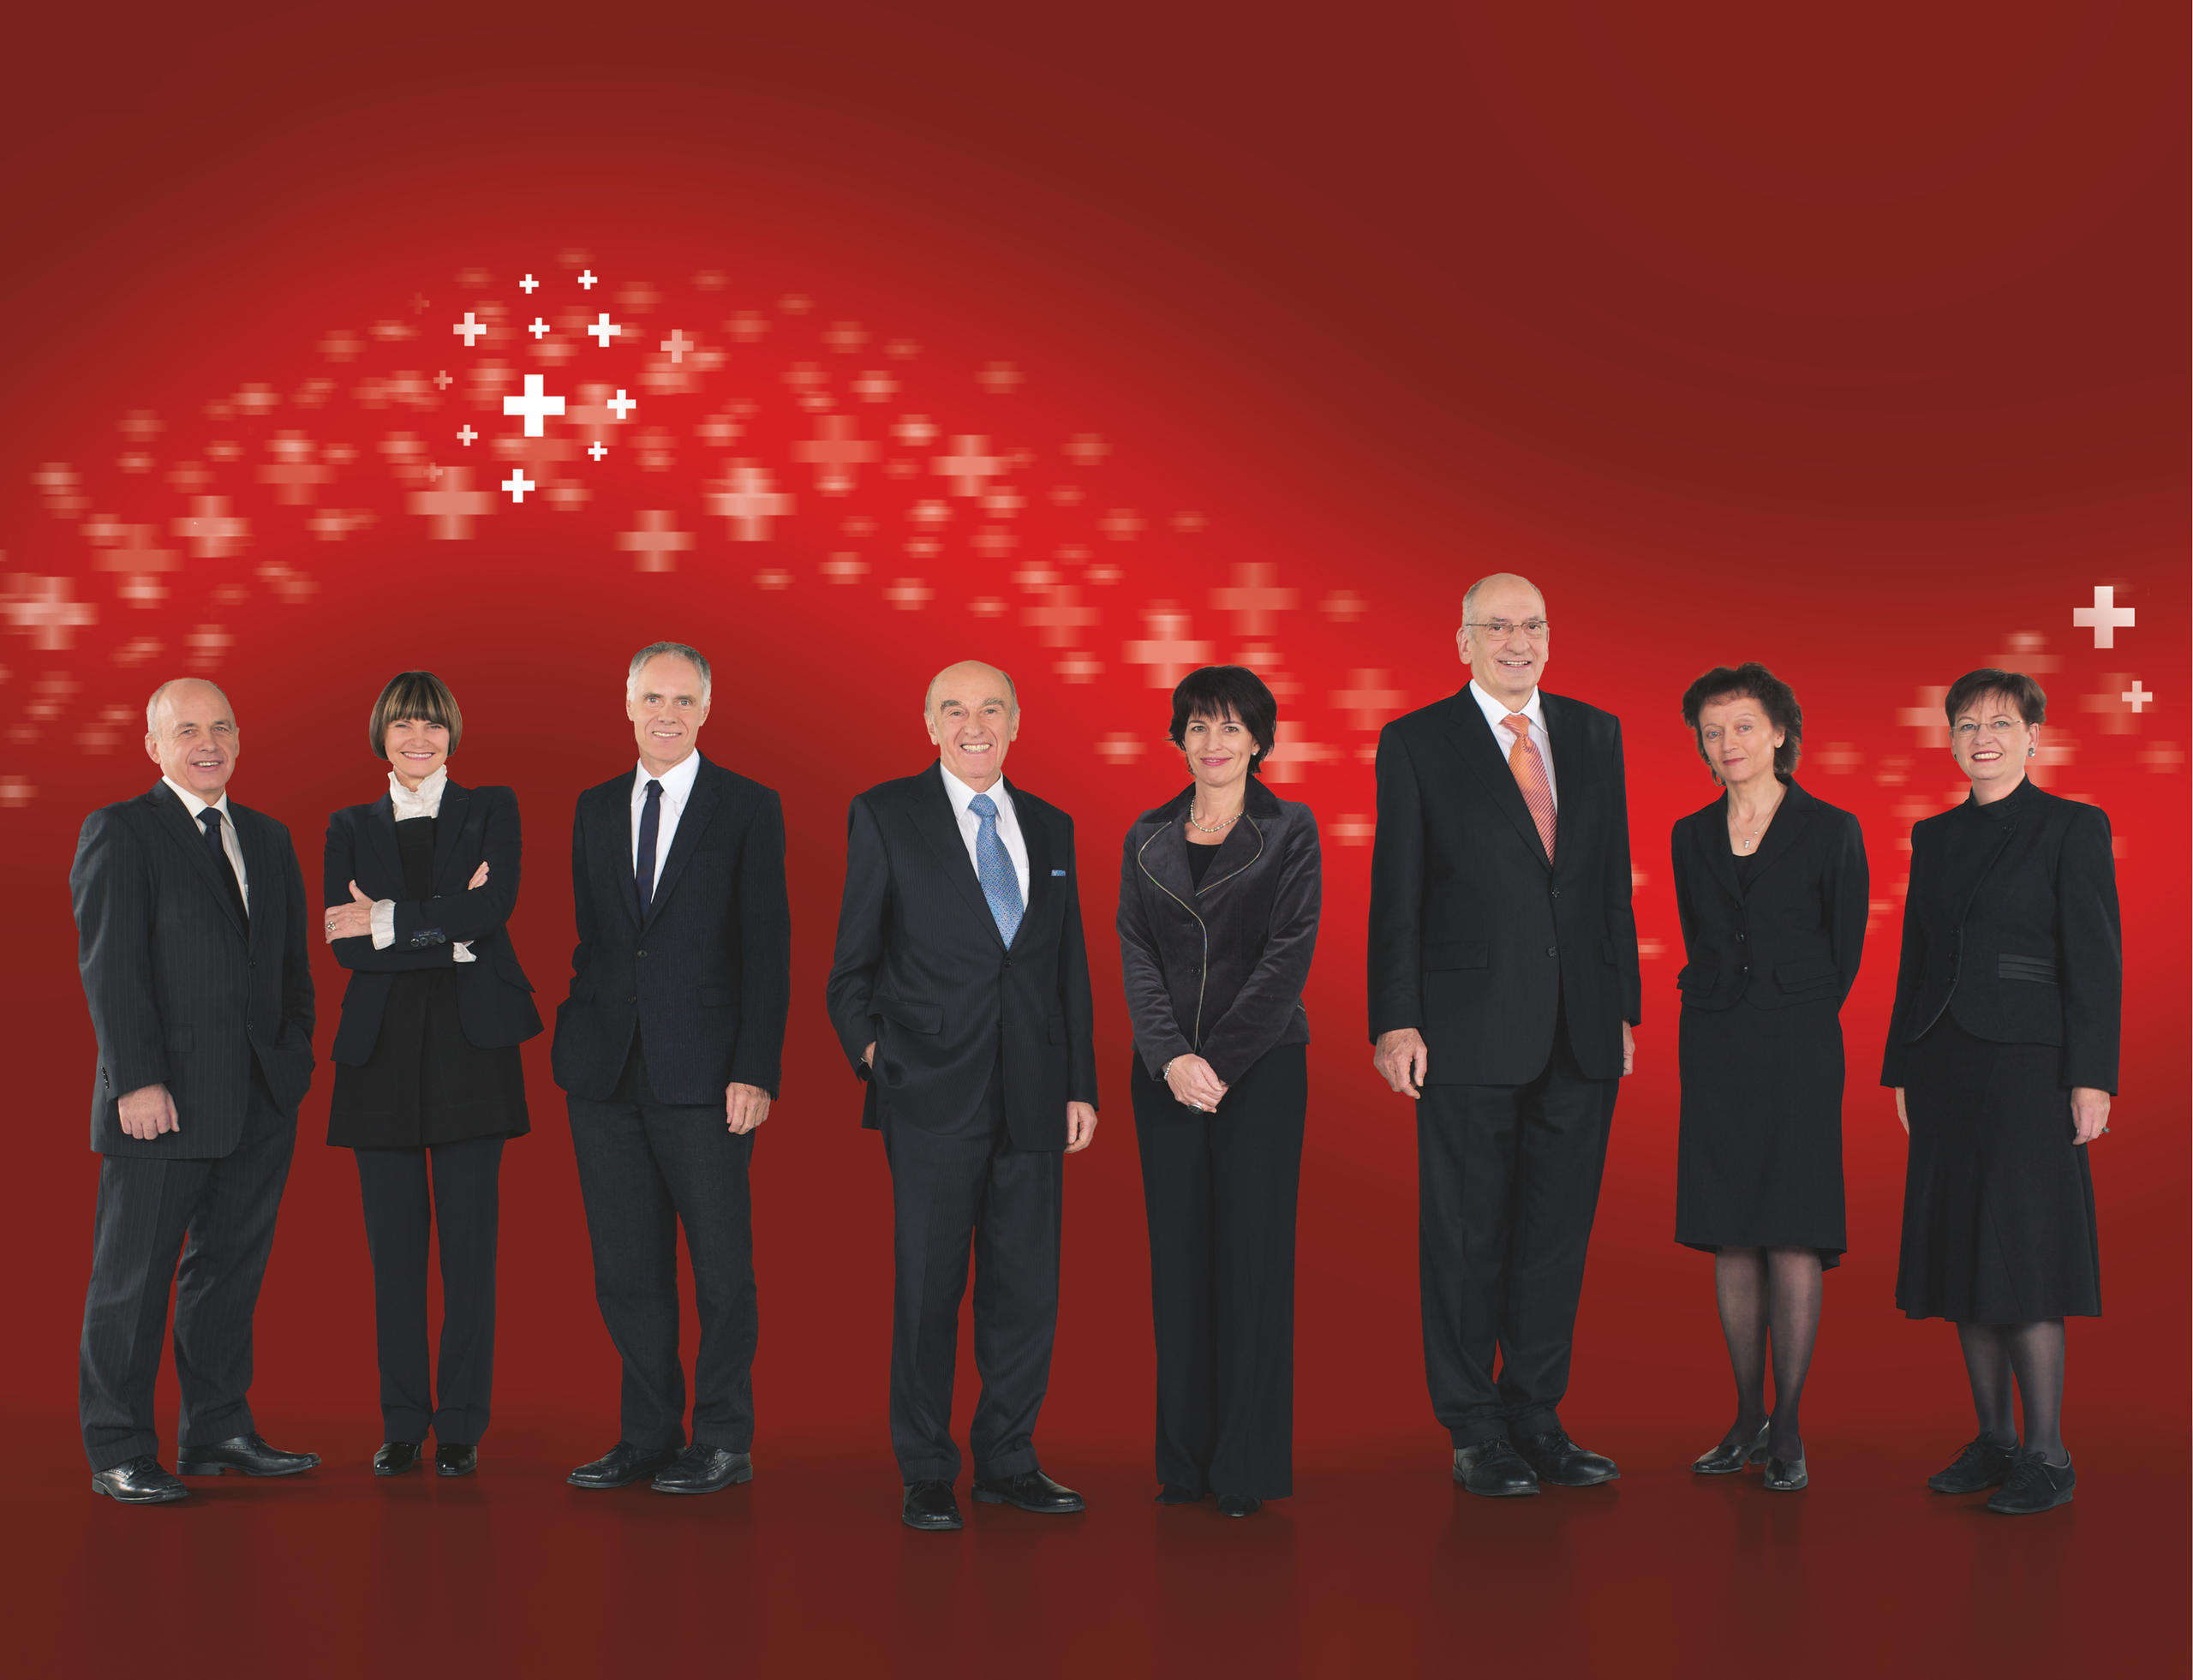 صورة جماعية للحكومة السويسرية